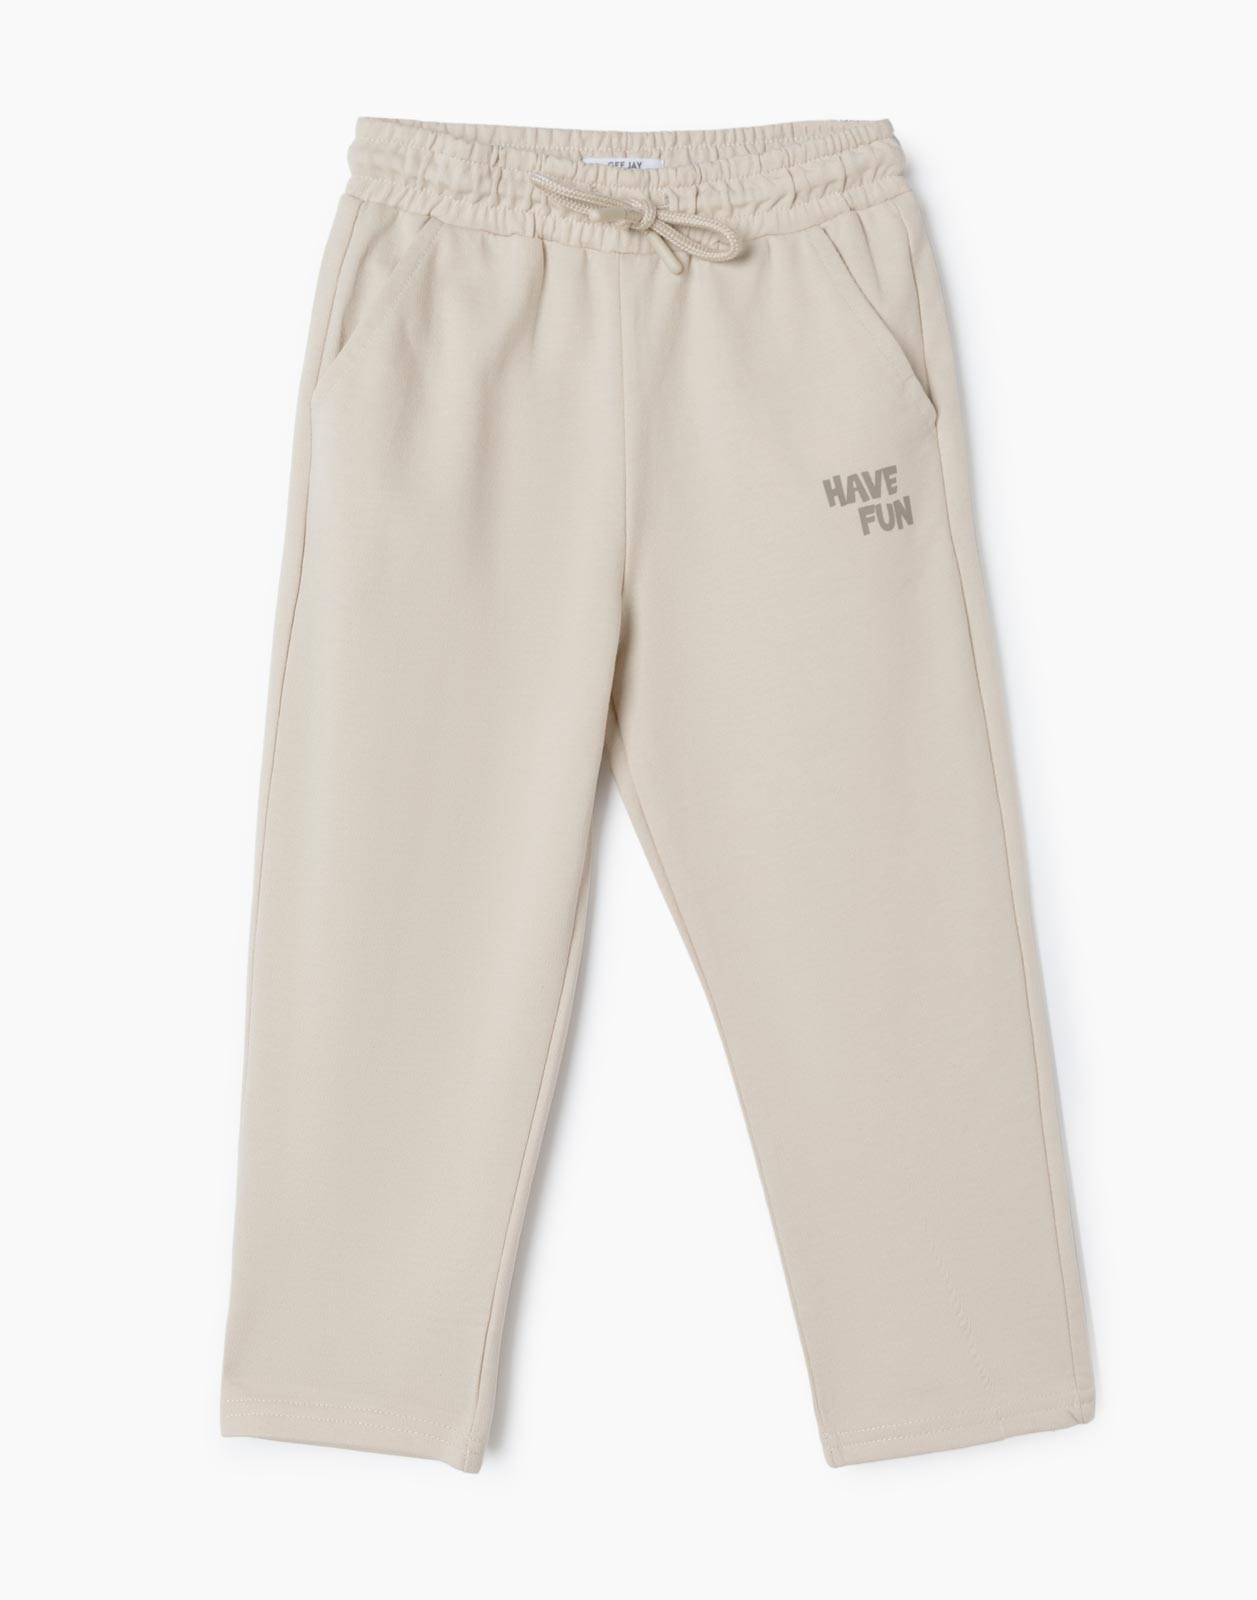 Бежевые спортивные брюки Comfort с надписью Have Fun для мальчика р.80